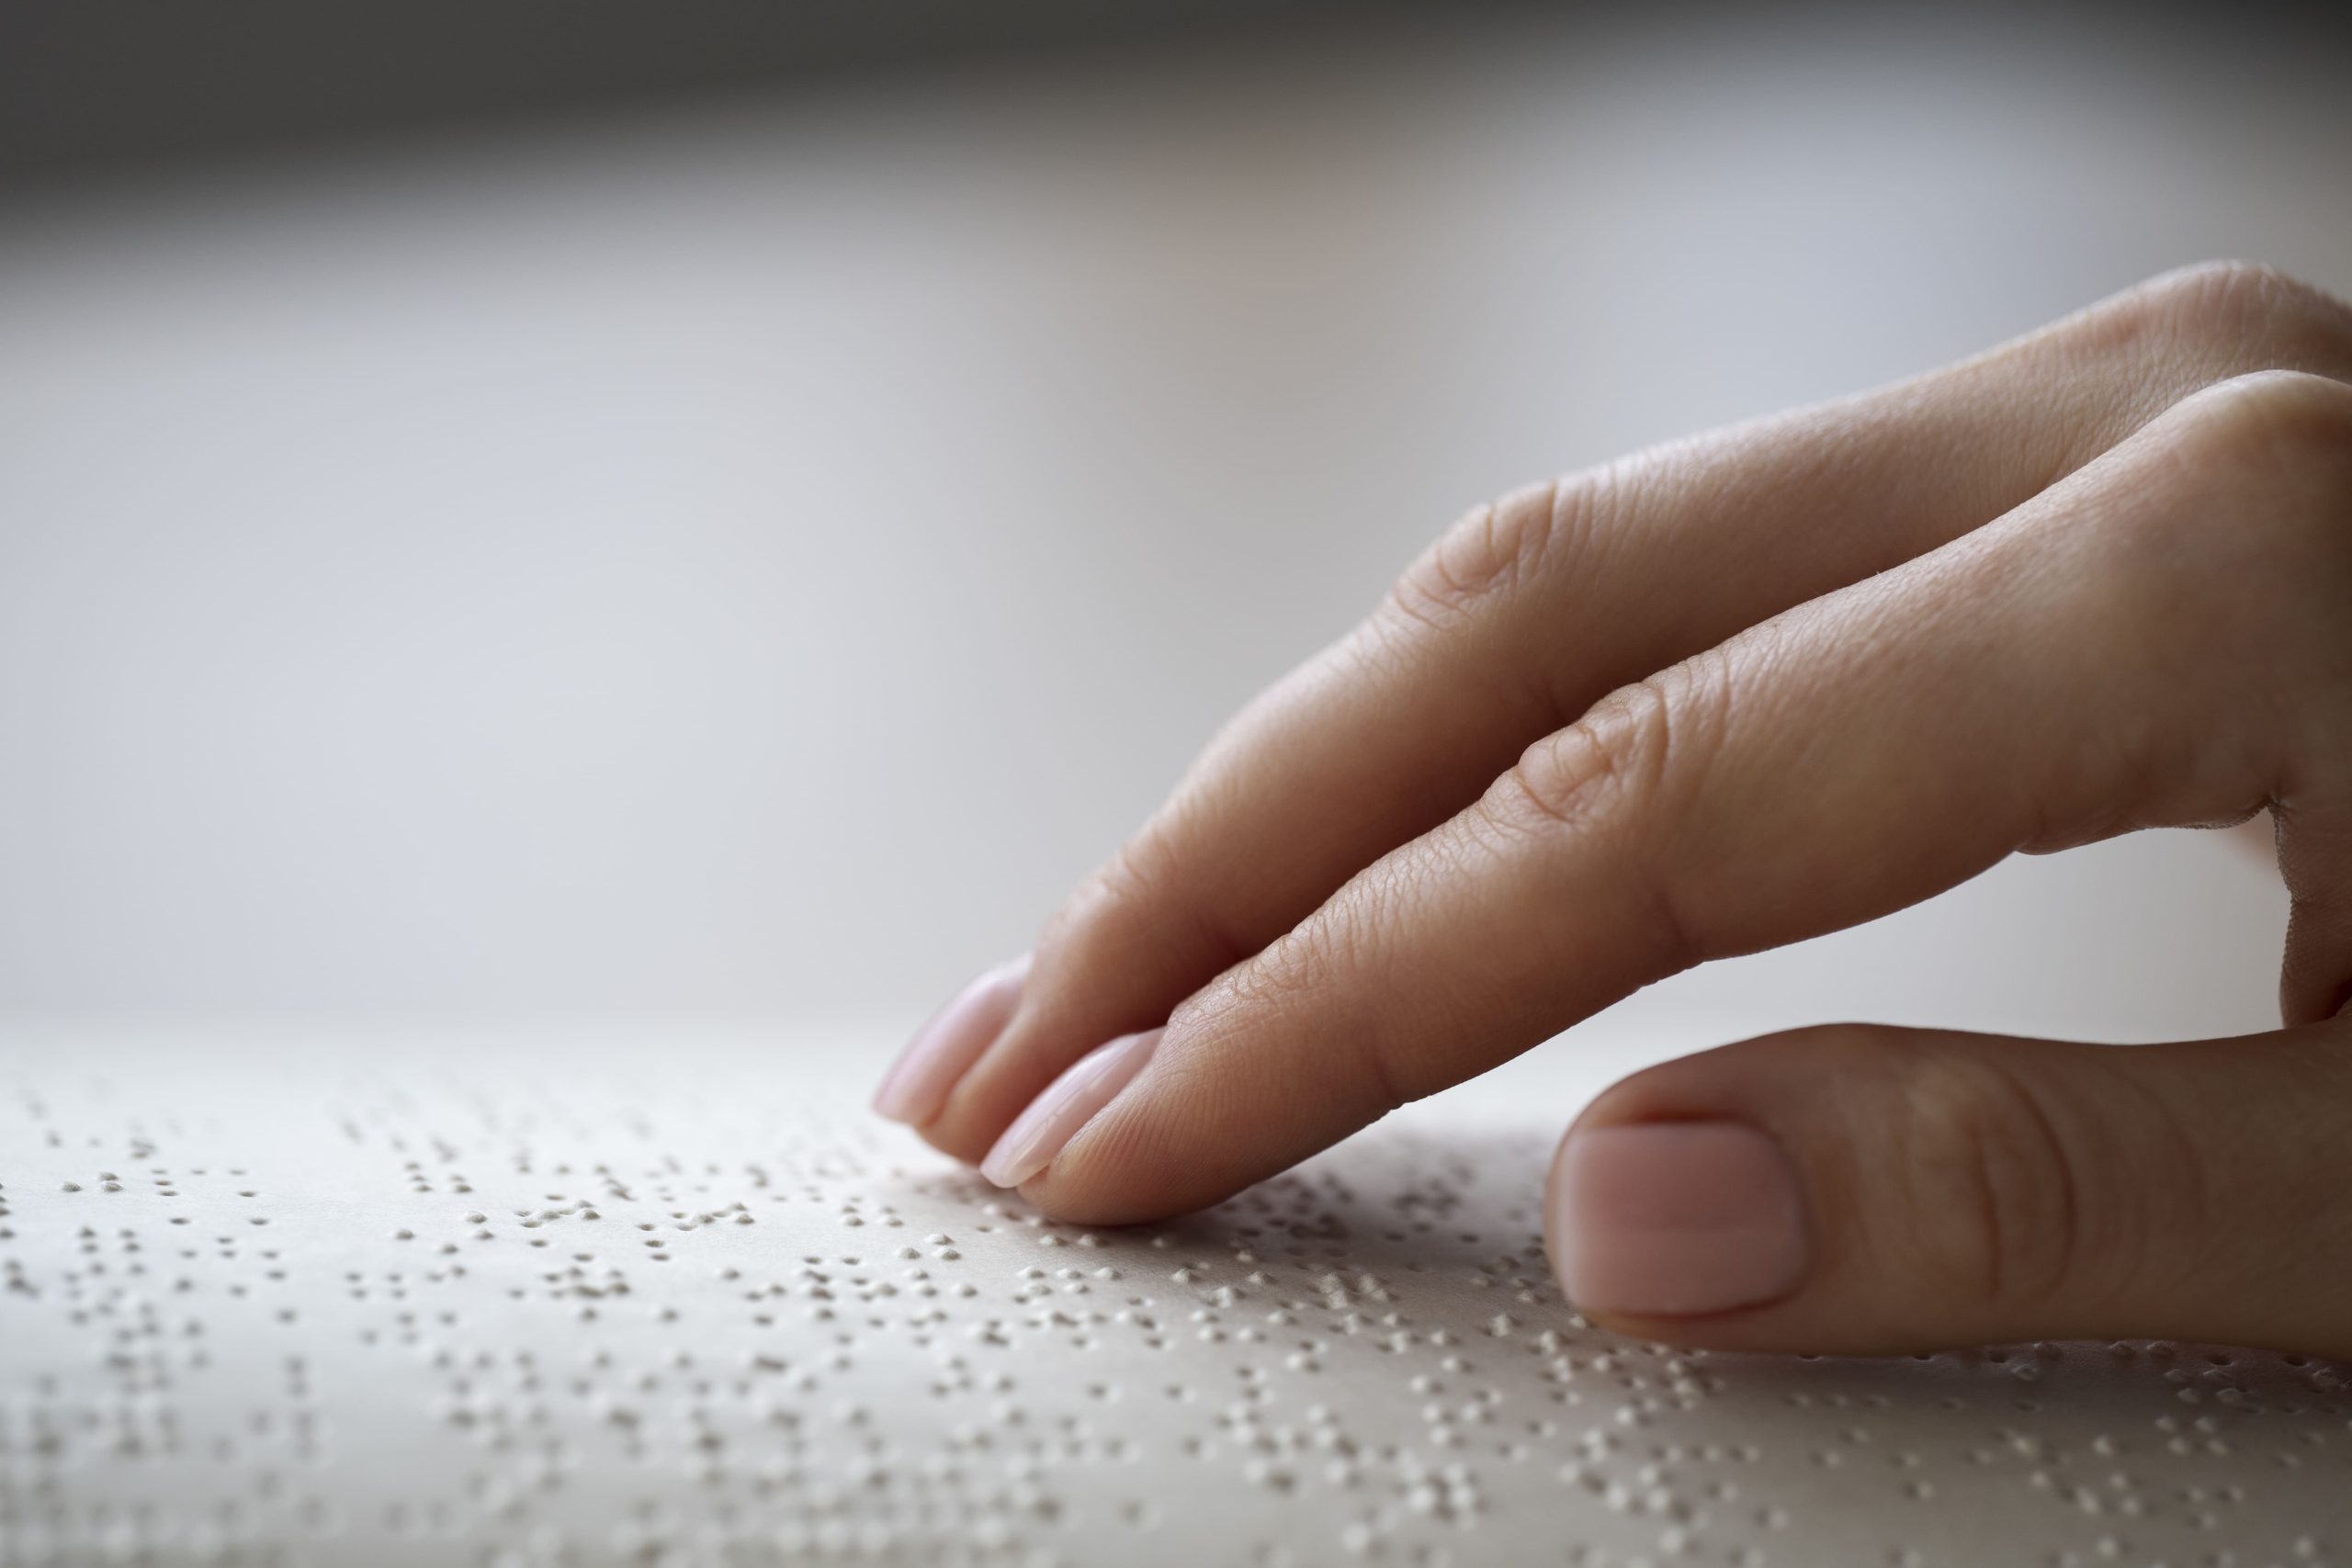 La mano de una persona tocando un libro escrito en braille.